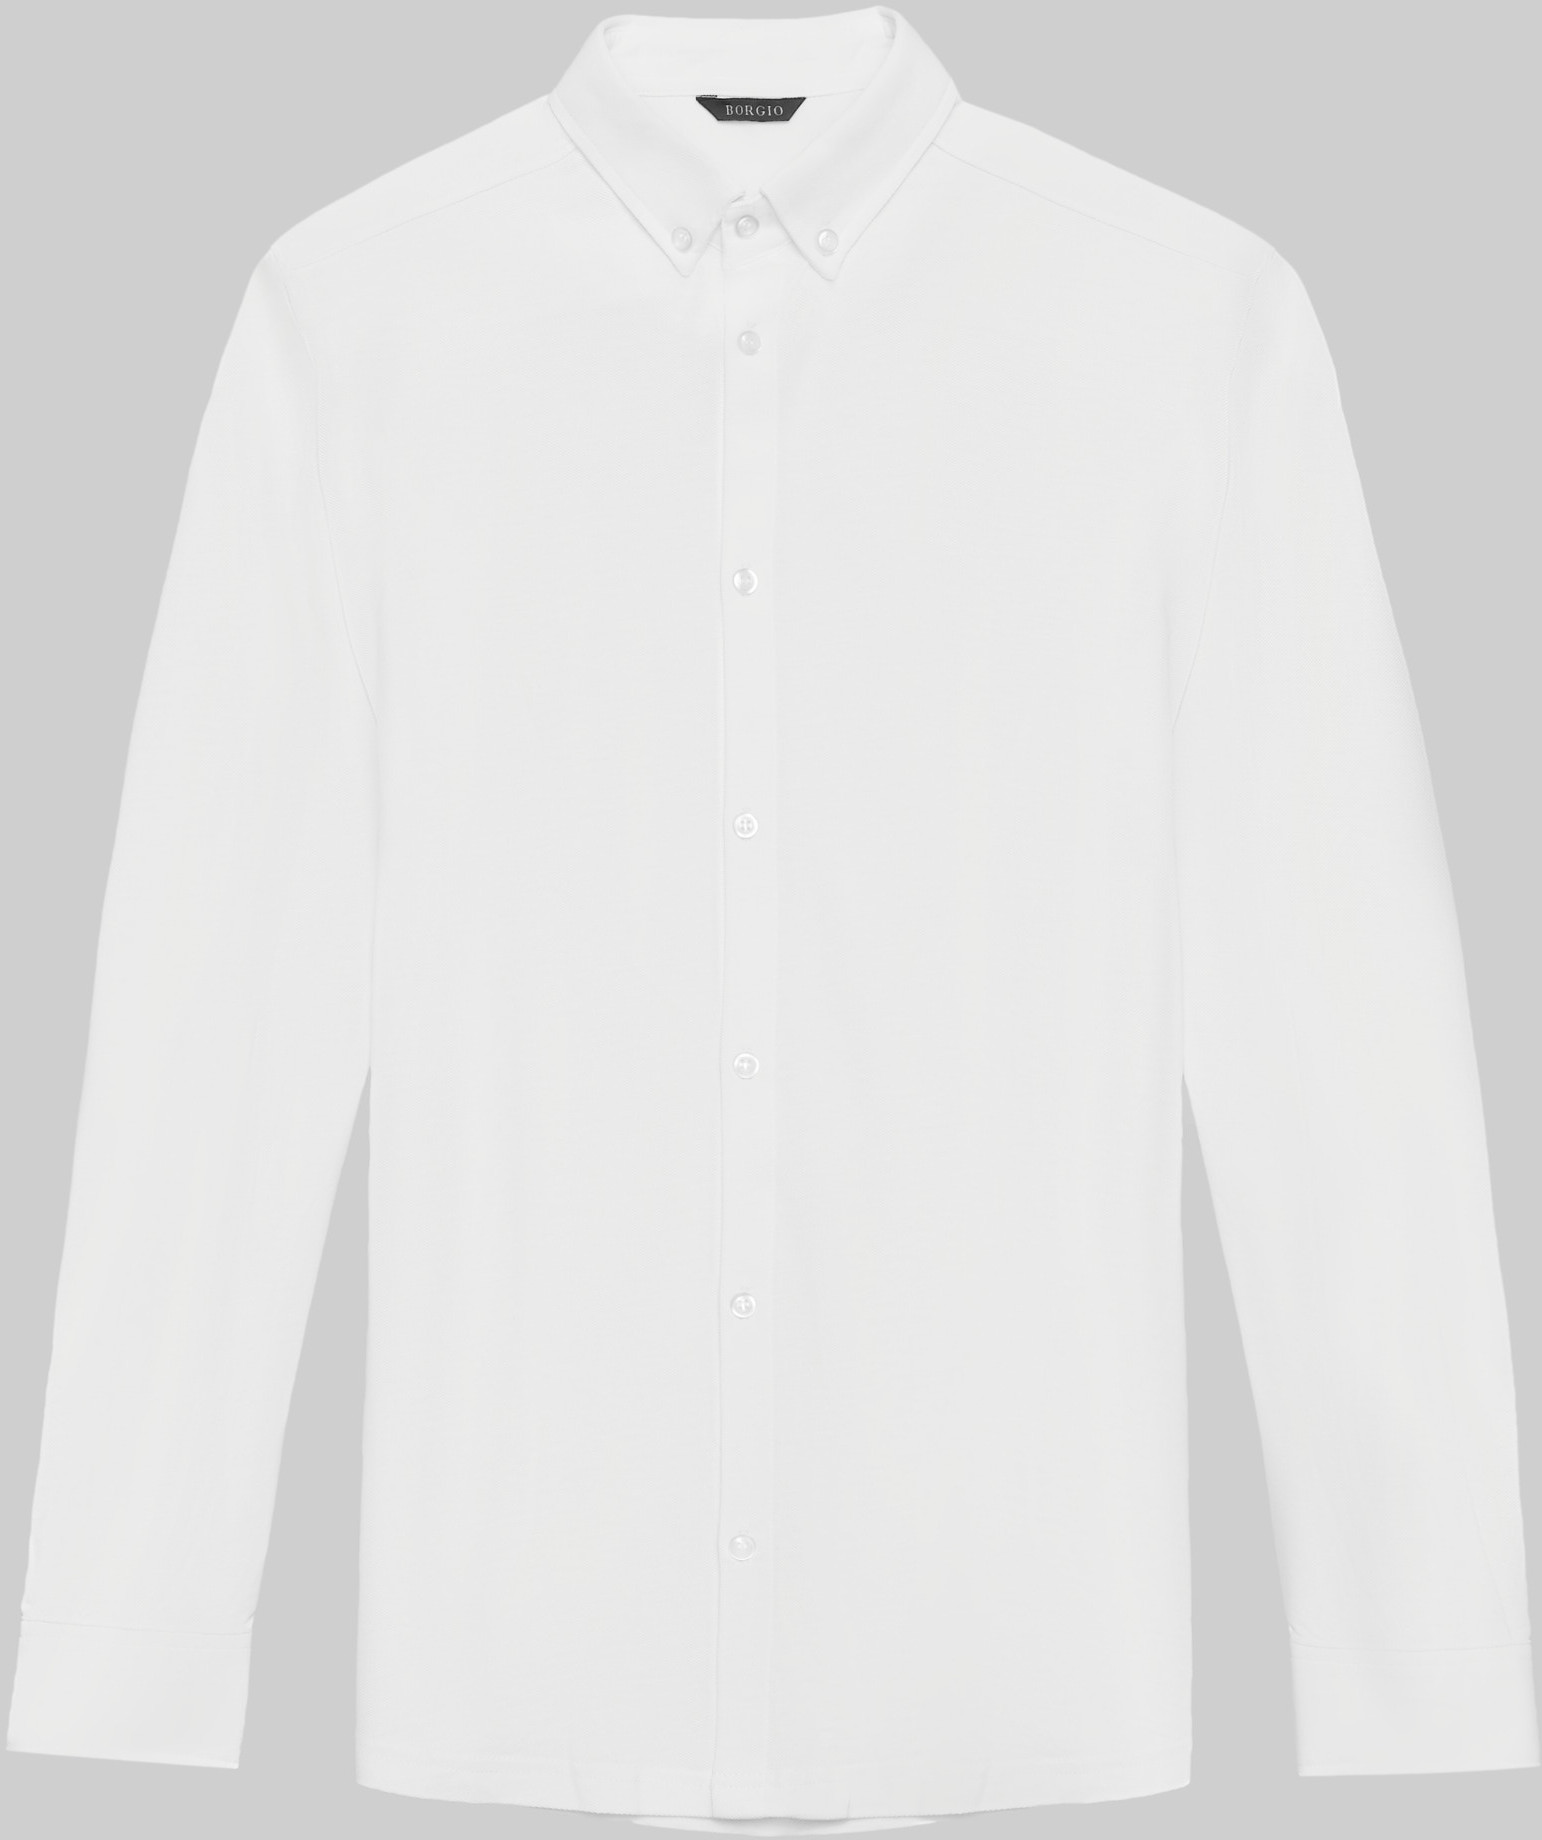 Borgio koszula lenola 00331 długi rękaw biały slim fit